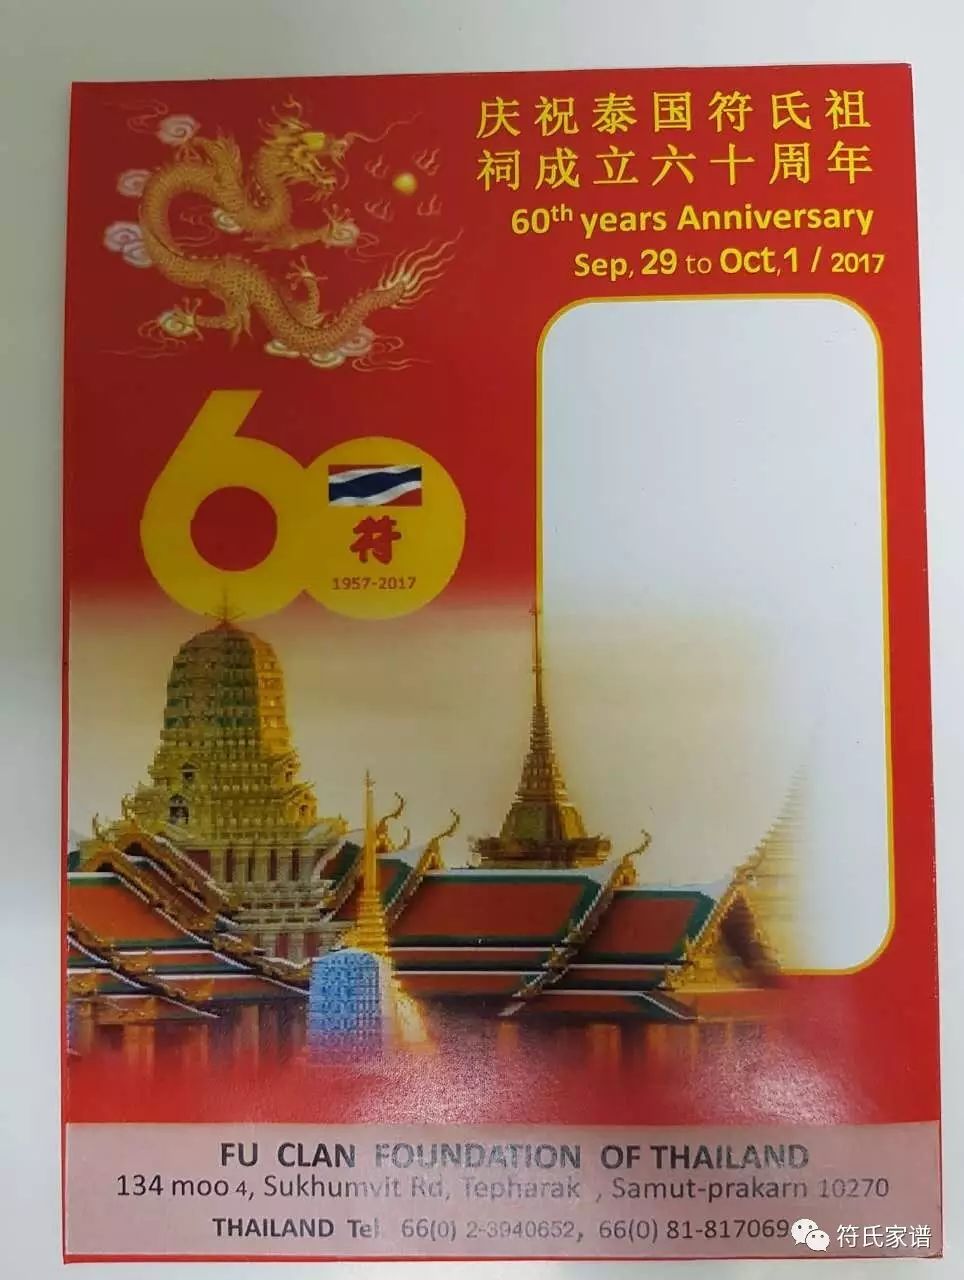 泰国符氏祖祠创立六十周年庆典活动将于2017年9月30在泰国举行